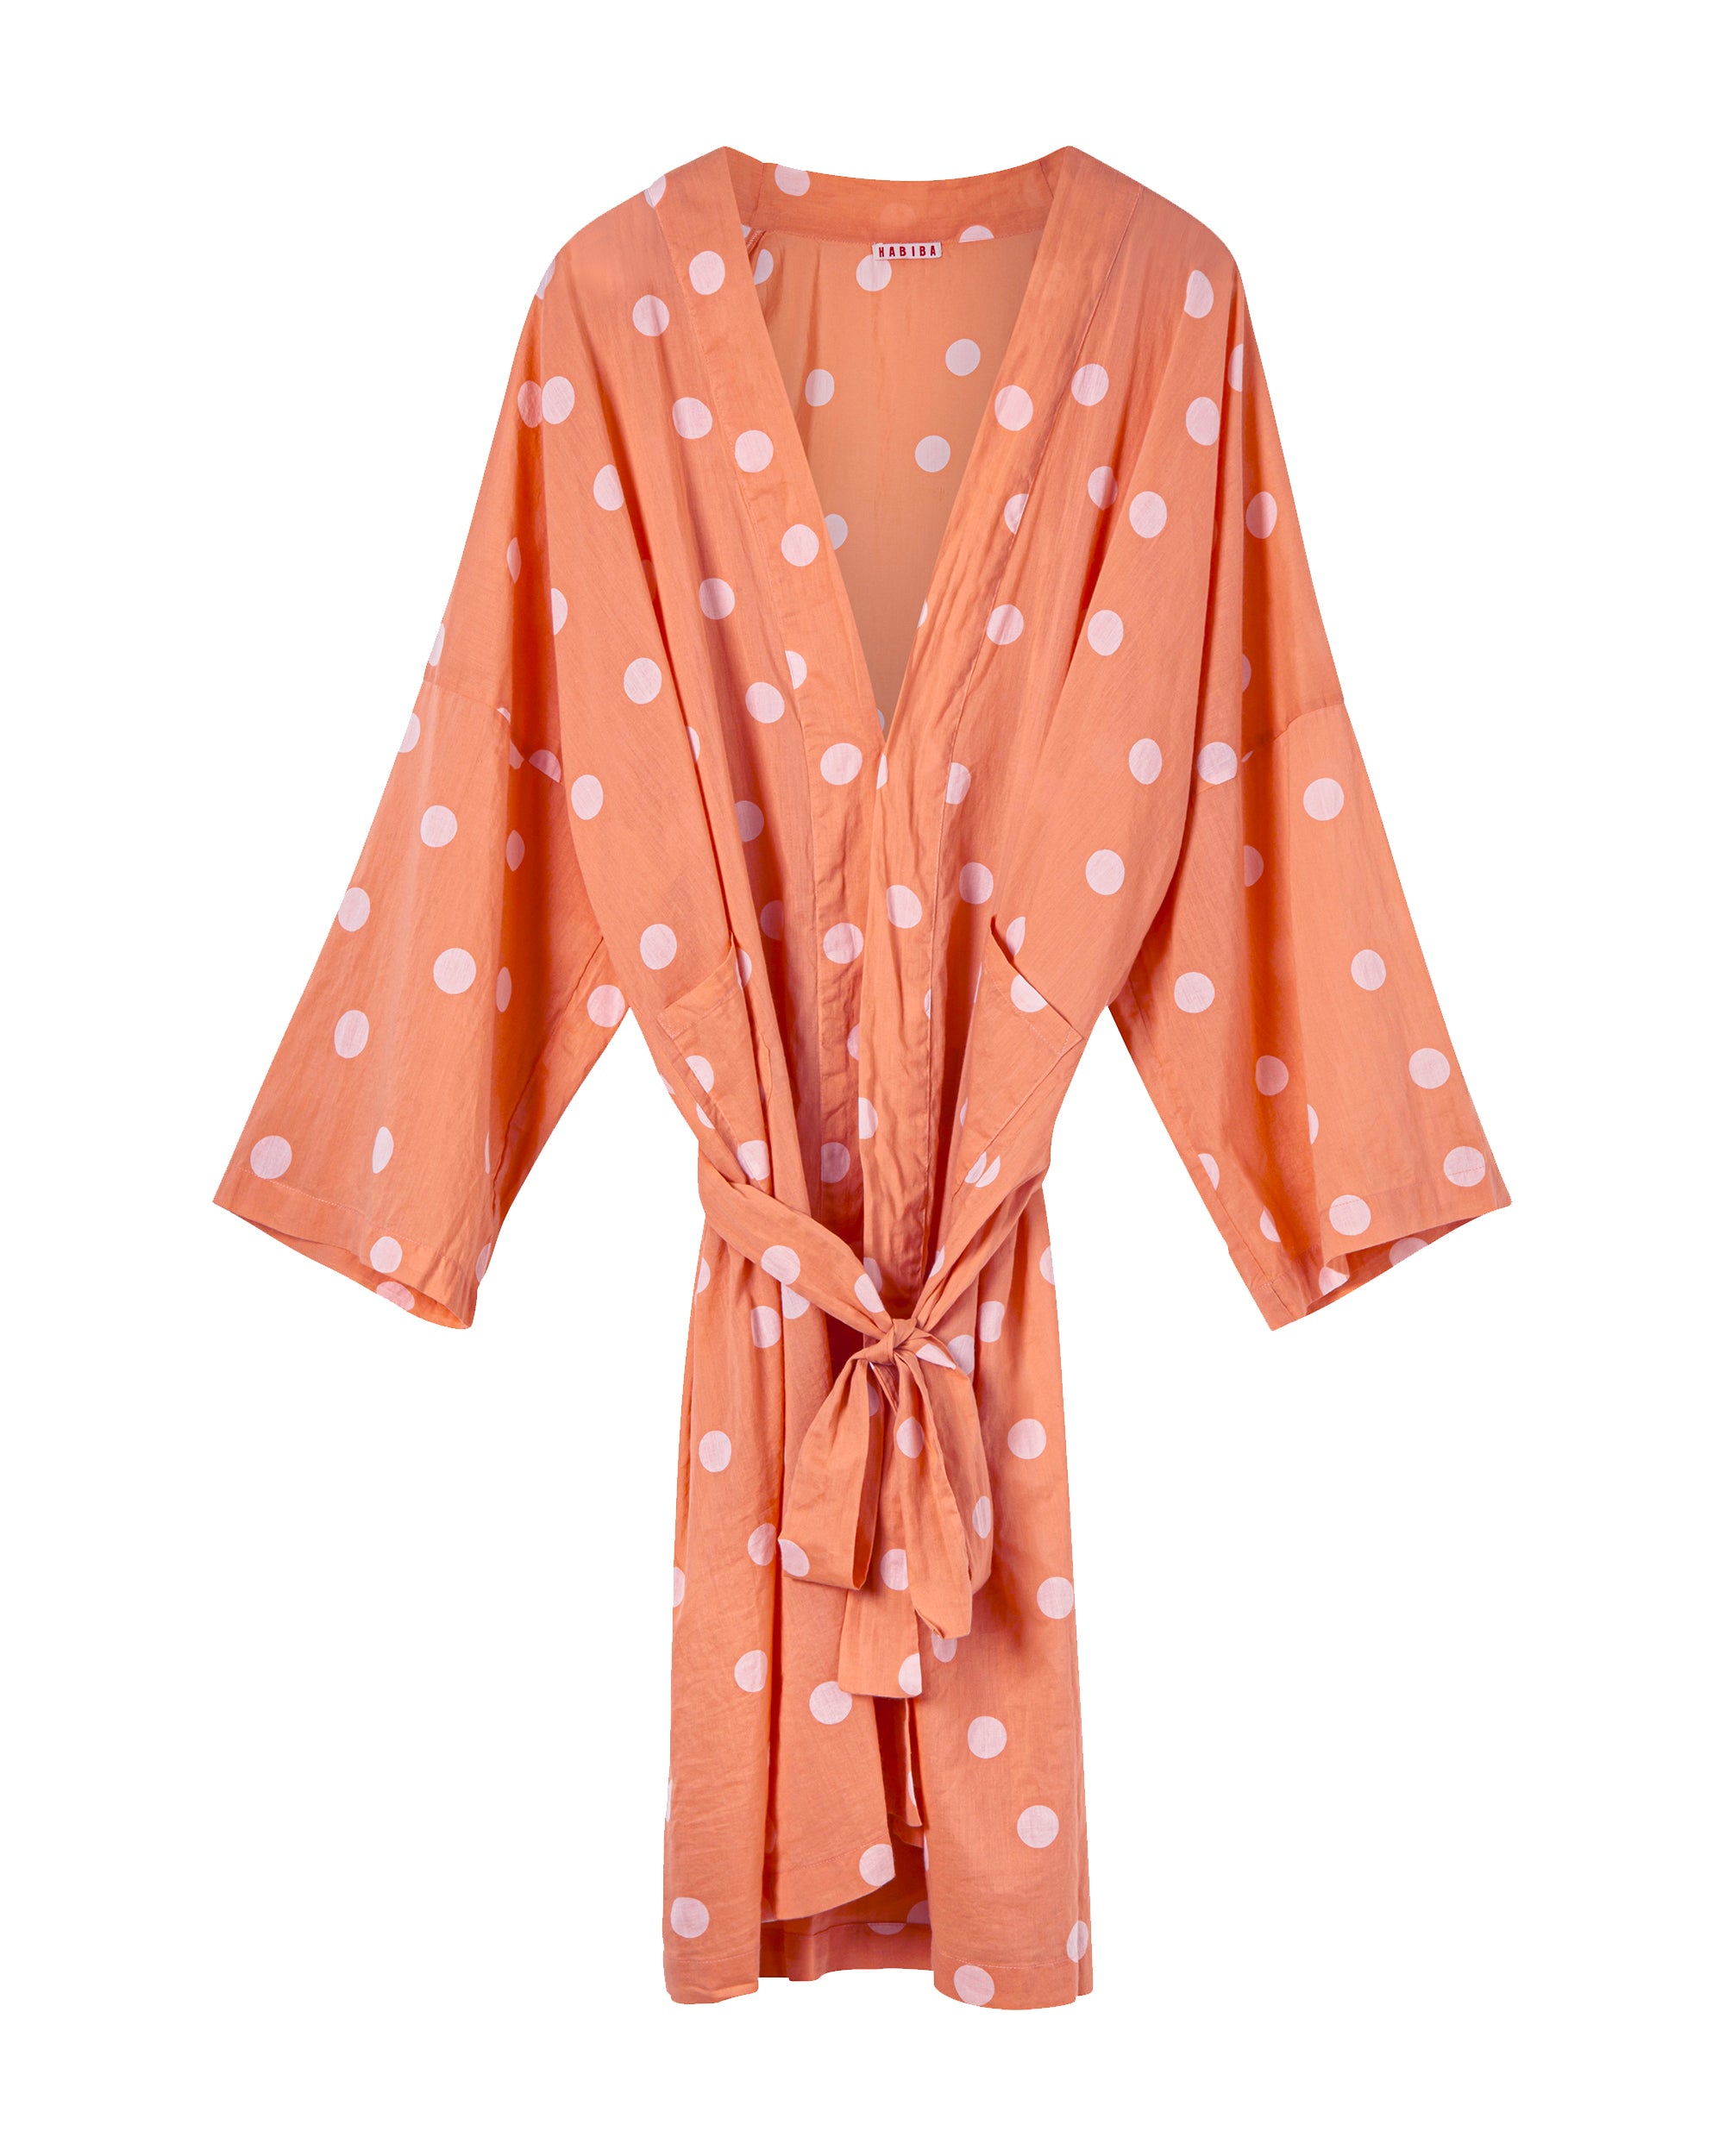 HABIBA MILLA KIMONO Kimono LIGHT PEACH